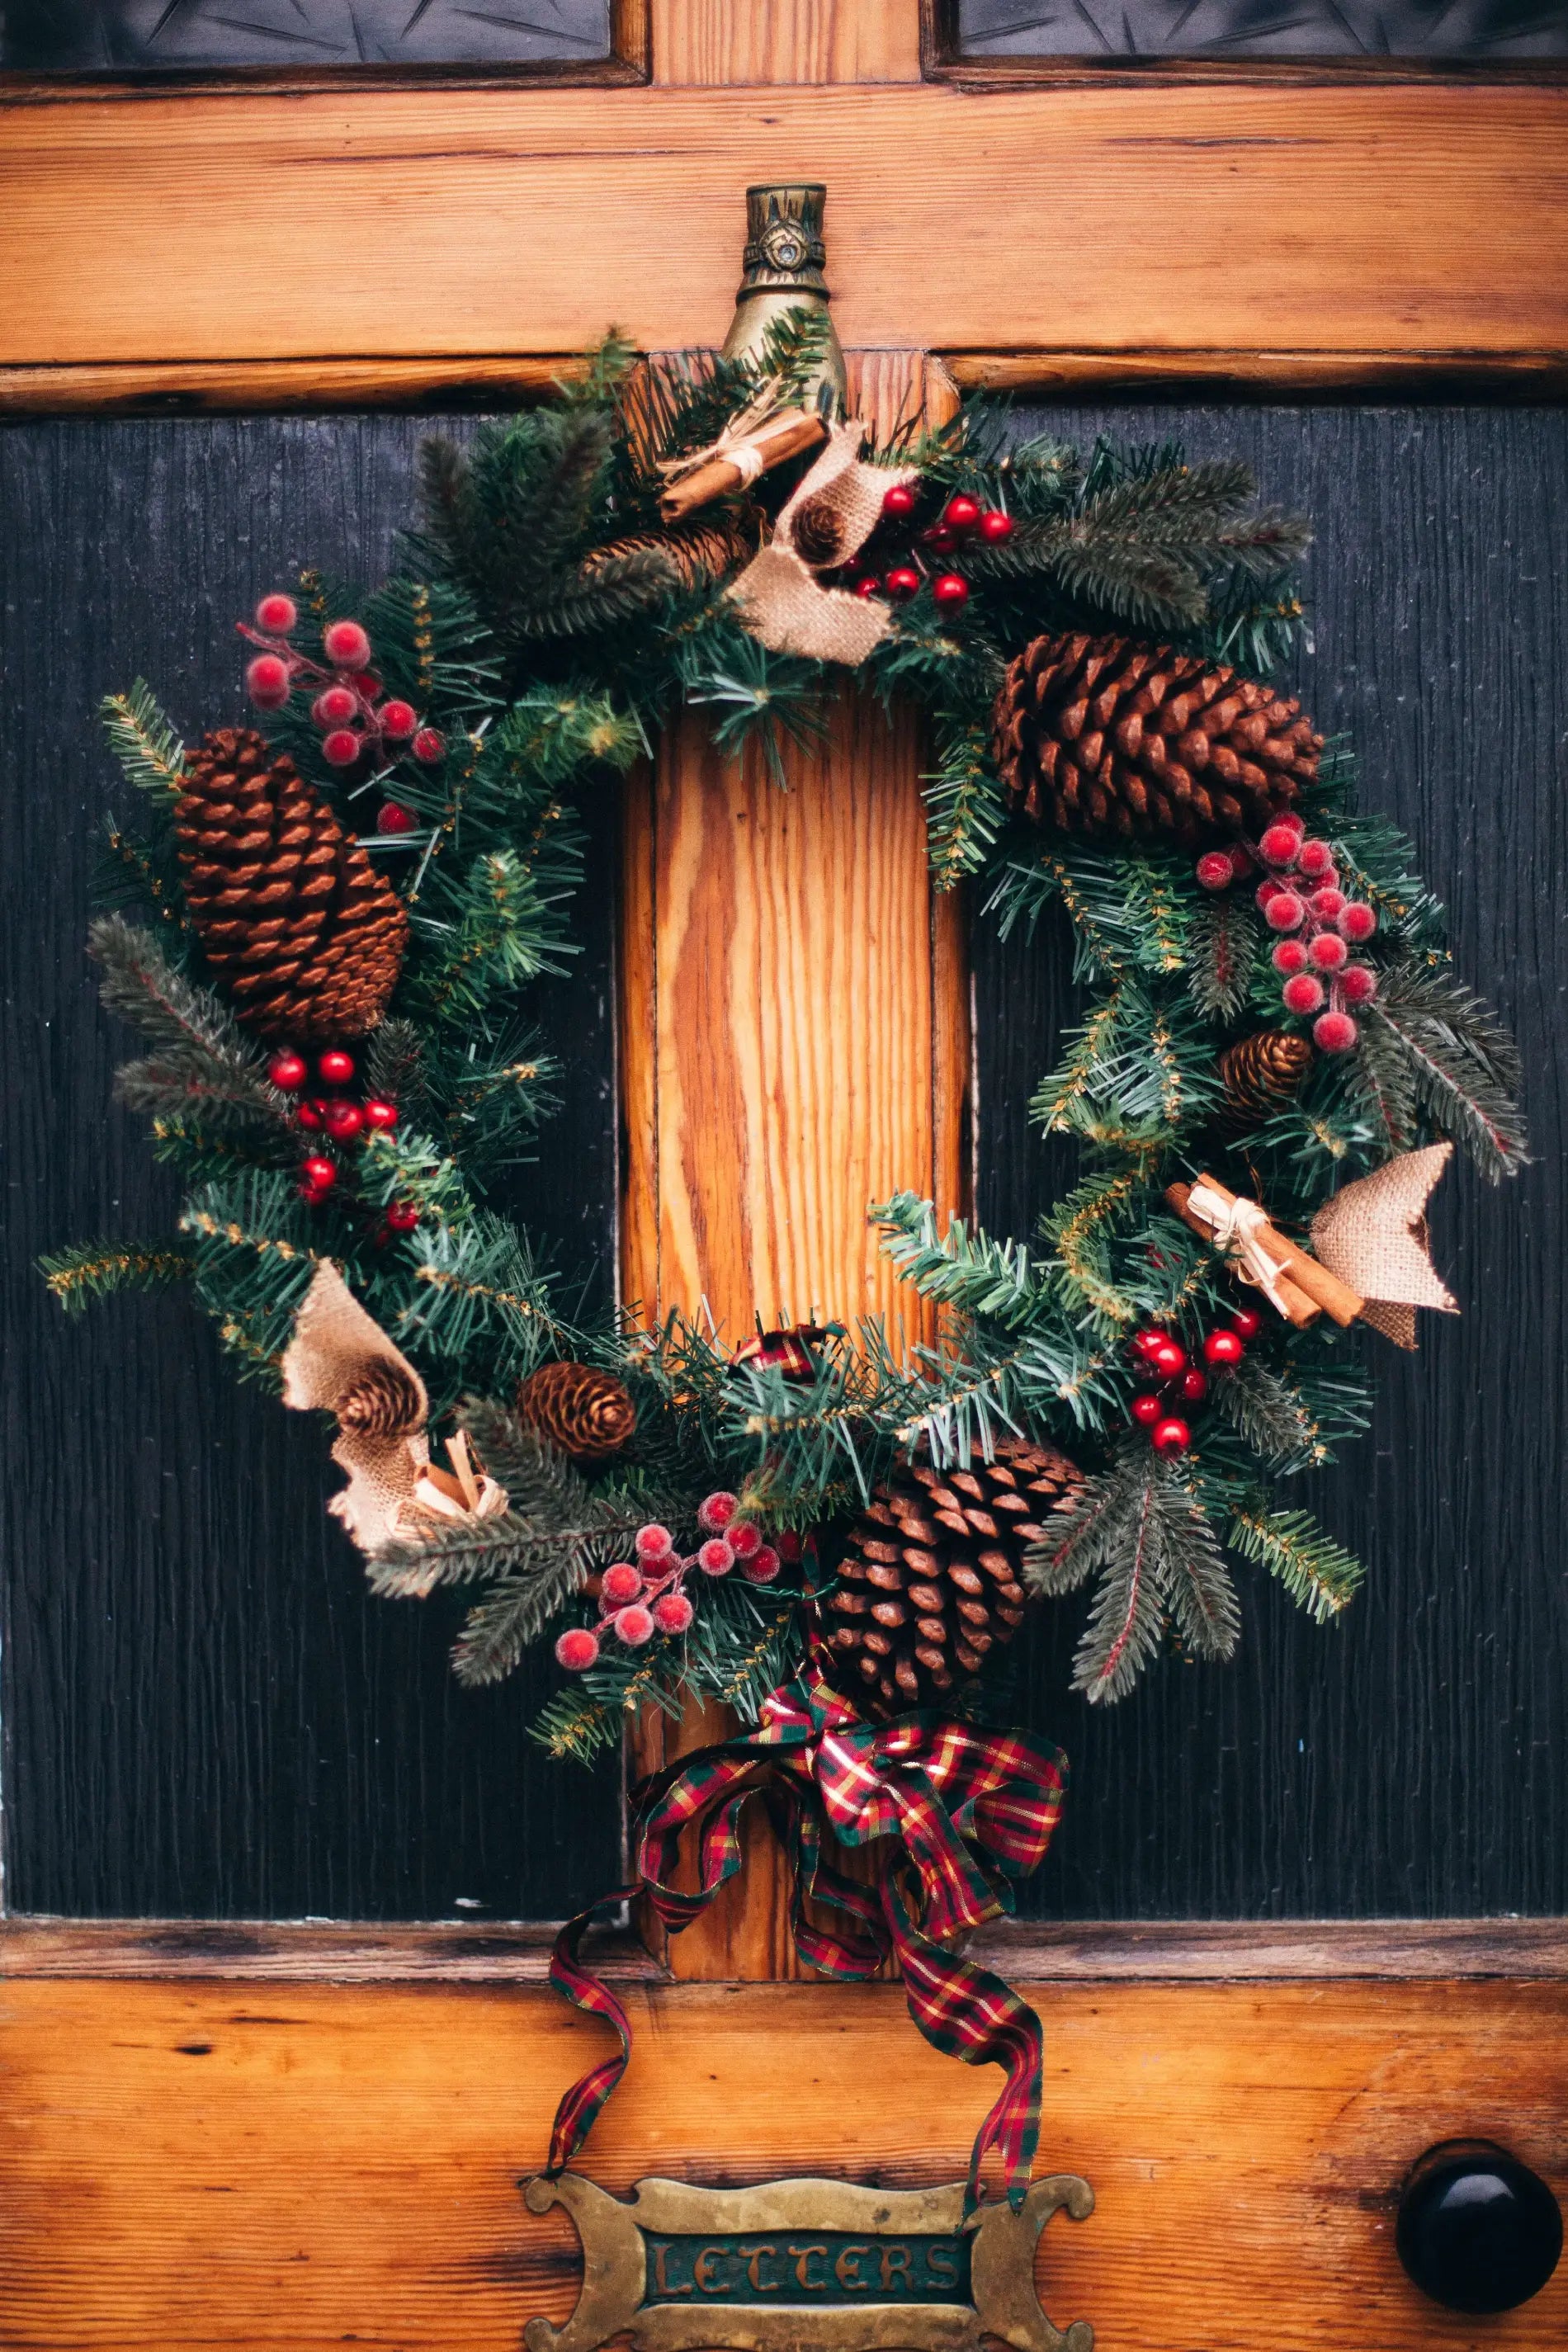 Festive Wreath on Door